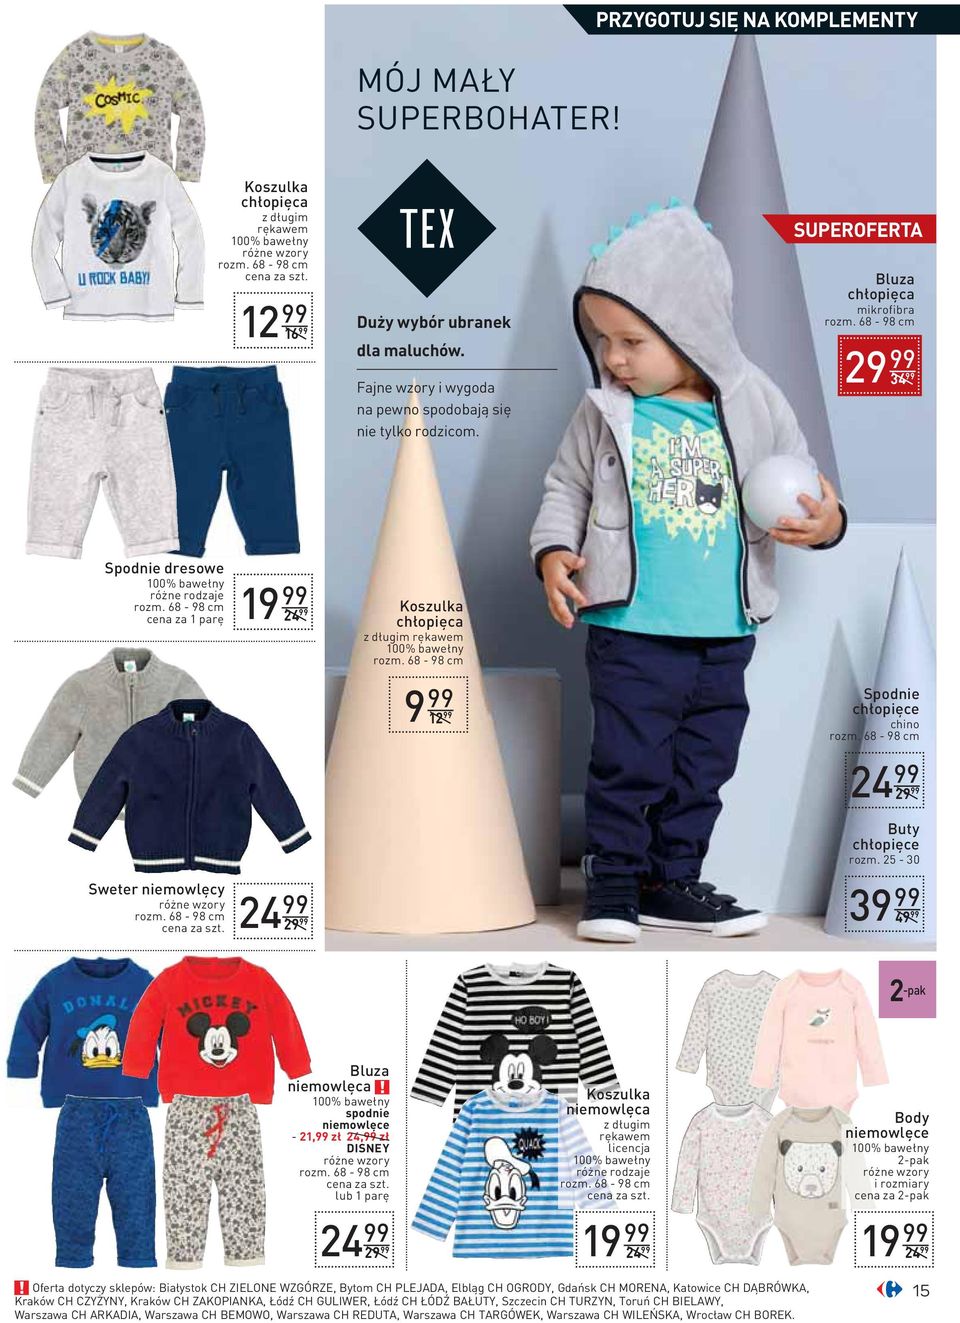 25-30 2 -pak Bluza niemowlęca spodnie niemowlęce - 21,99 zł 24,99 zł DISNEY lub 1 parę Koszulka niemowlęca z długim rękawem licencja Body niemowlęce 2-pak i rozmiary cena za 2-pak Oferta dotyczy